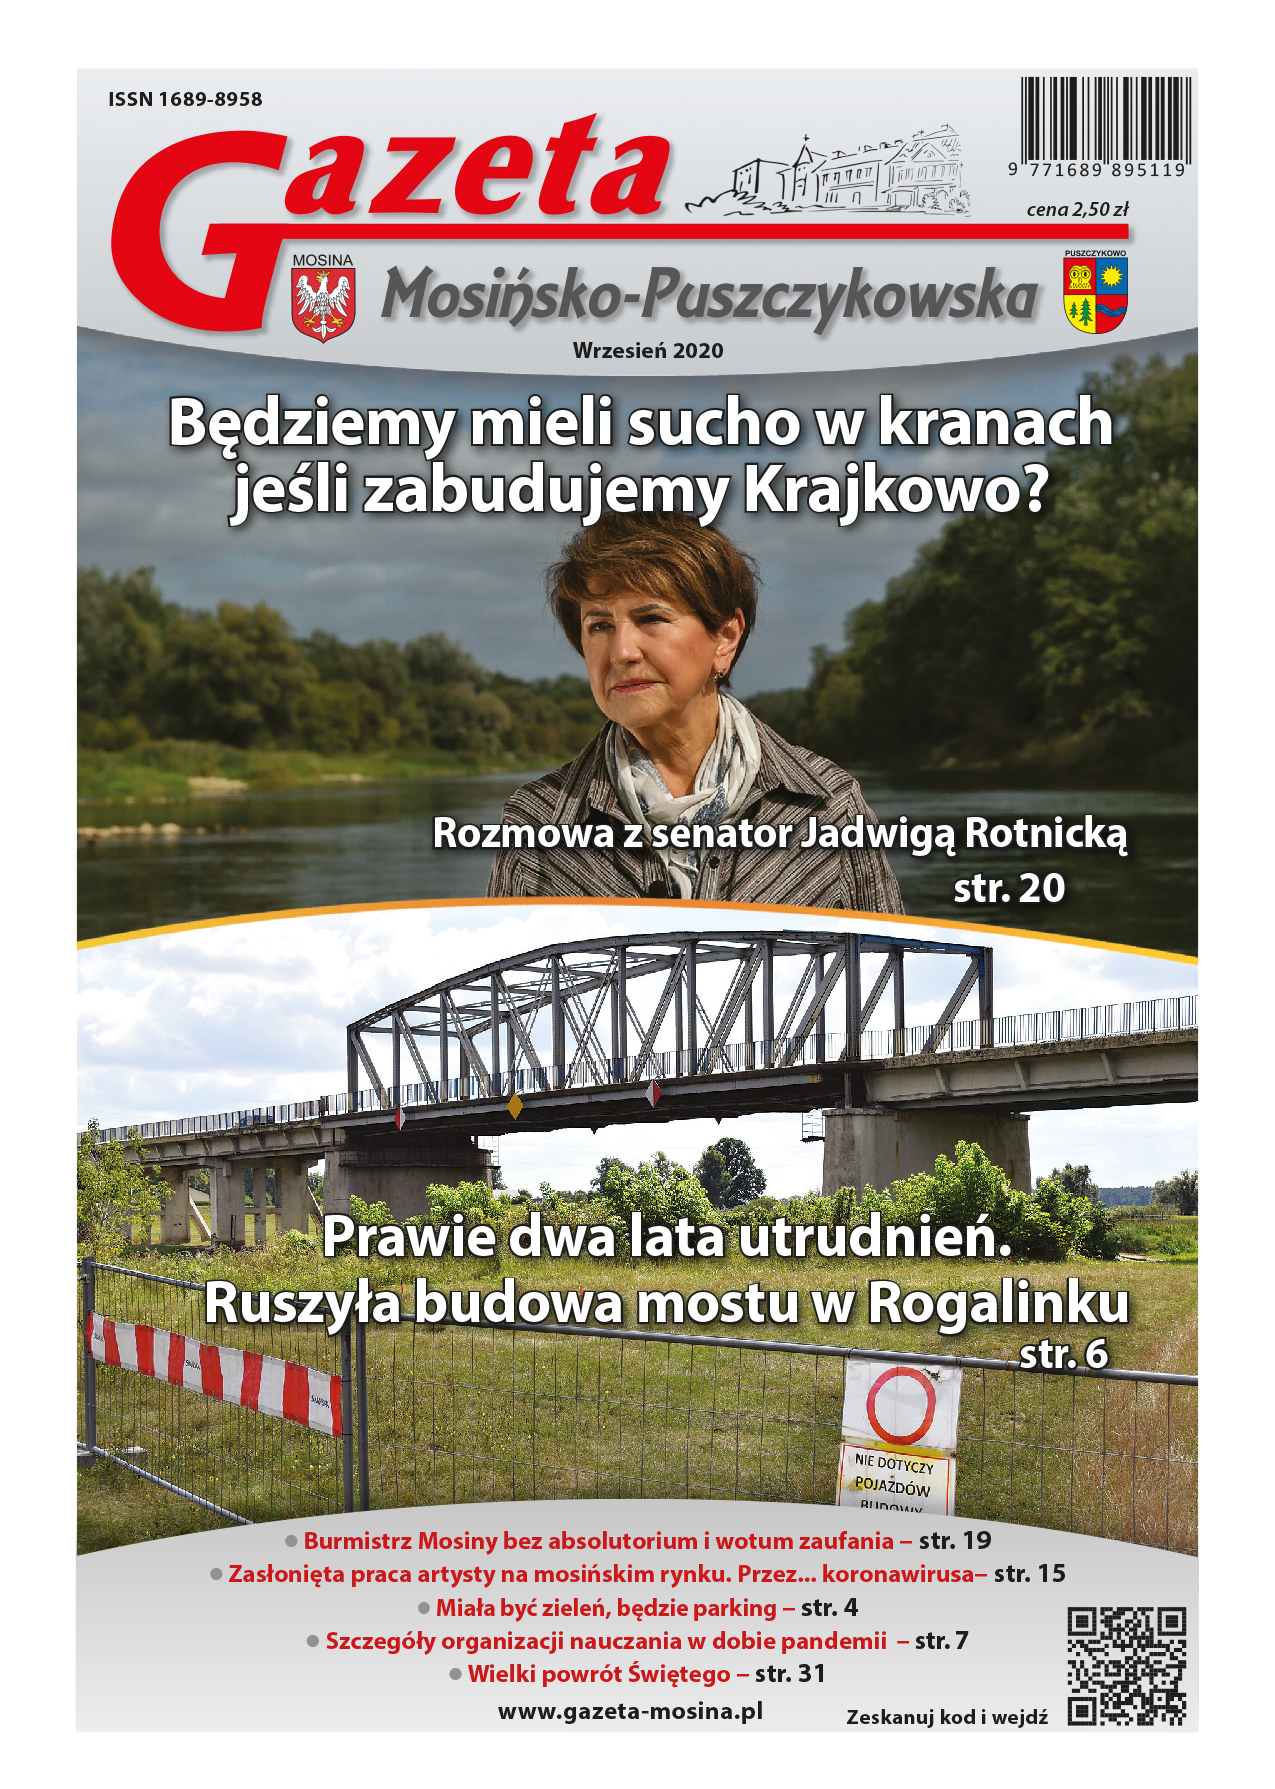 Gazeta Mosińsko-Puszczykowska - wydanie wrześniowe